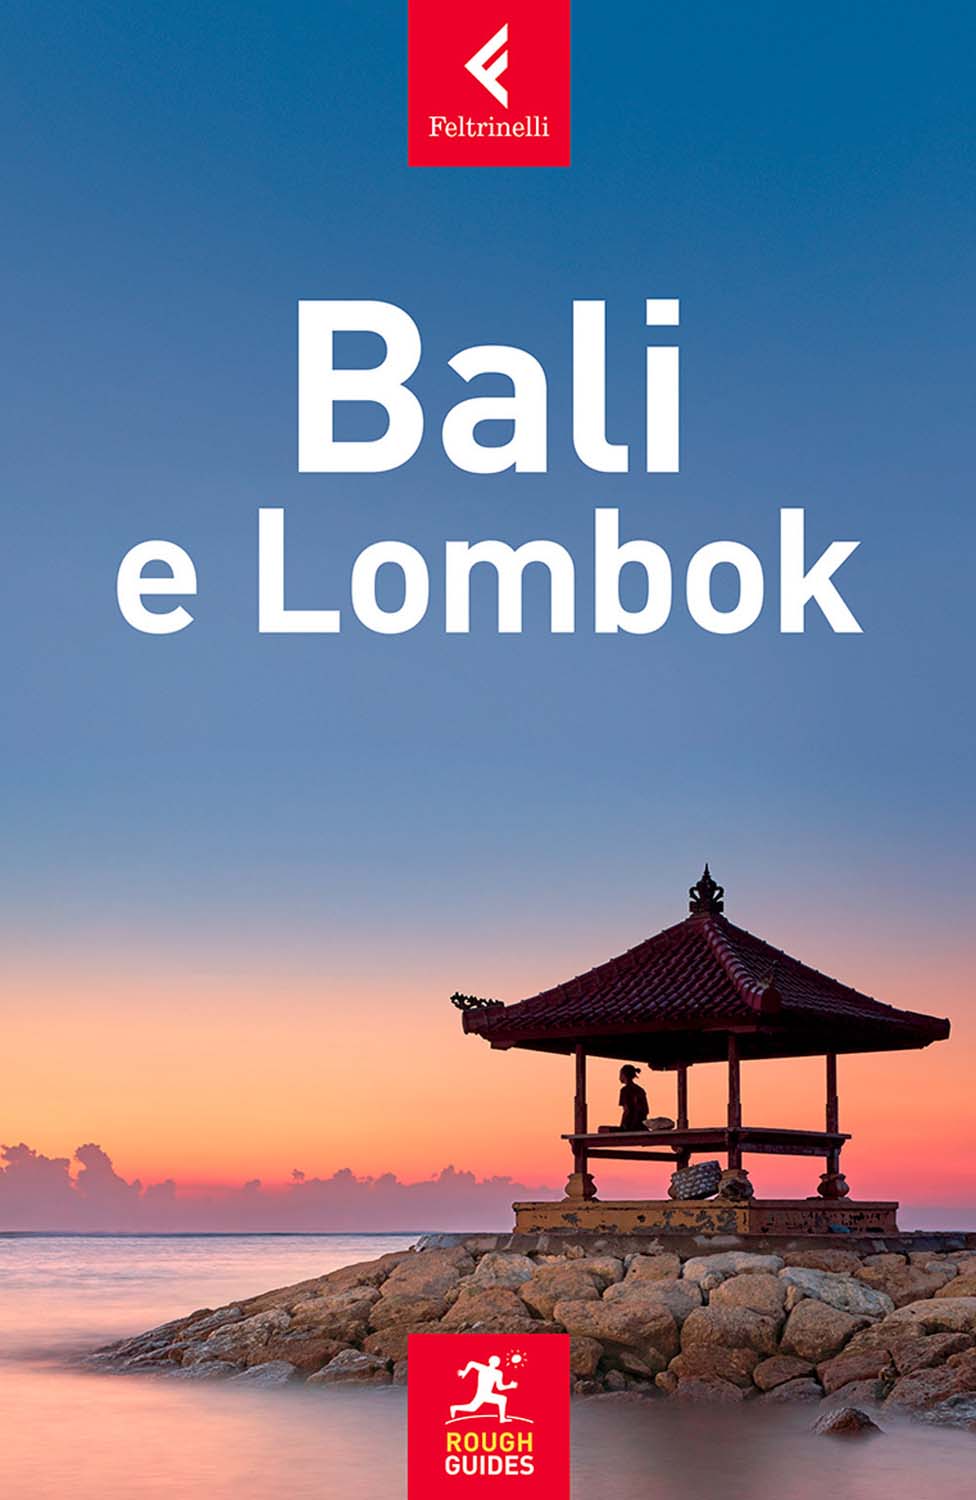 Libri Iain Stewart - Bali E Lombok NUOVO SIGILLATO, EDIZIONE DEL 08/02/2018 SUBITO DISPONIBILE